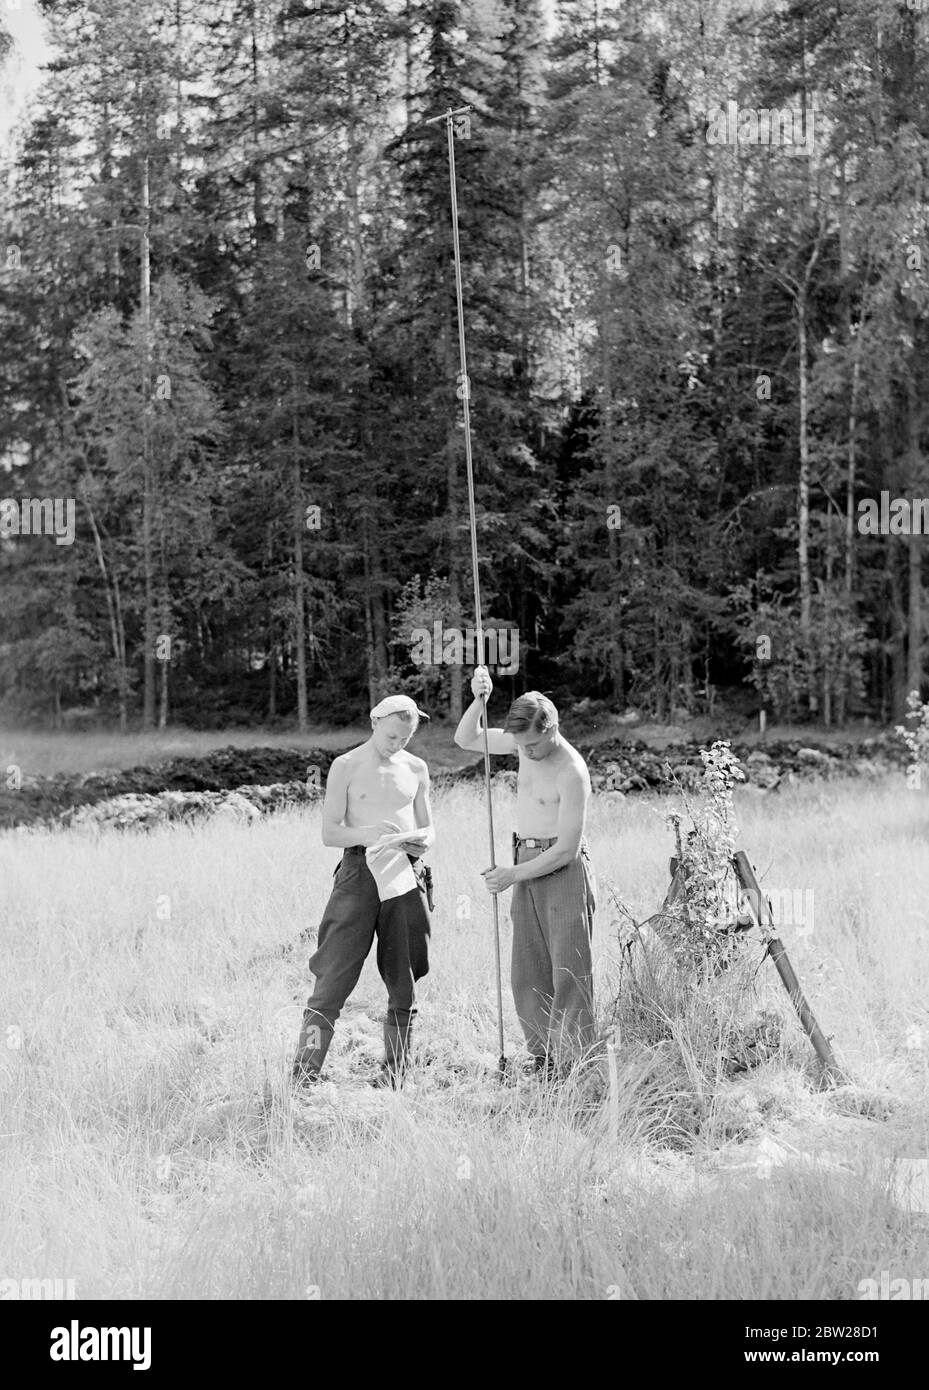 Die größten Förster der Welt. Finnland - Finnisches Alltagsleben Waldakademie Korkeakoski 1939 aus einer Serie Diese Männer bauten die Mannerheim-Linie - die finnische Zone der Grenzbefestigungen wurde vollständig von der finnischen Bevölkerung entworfen und gebaut. Finnische Ingenieure begannen die Arbeit auf der Linie im Jahr 1937, aber es war nicht bis in diesem Sommer im Jahr 1939, dass die Arbeiten beschleunigt und abgeschlossen. Dann, im Bewusstsein der Gefahren einer schwachen Grenze, gaben junge finnische Männer und Studenten ihre Sommerferien auf, um freiwillig beim Bau von Panzerfallen und Befestigungsanlagen zu helfen. Stockfoto